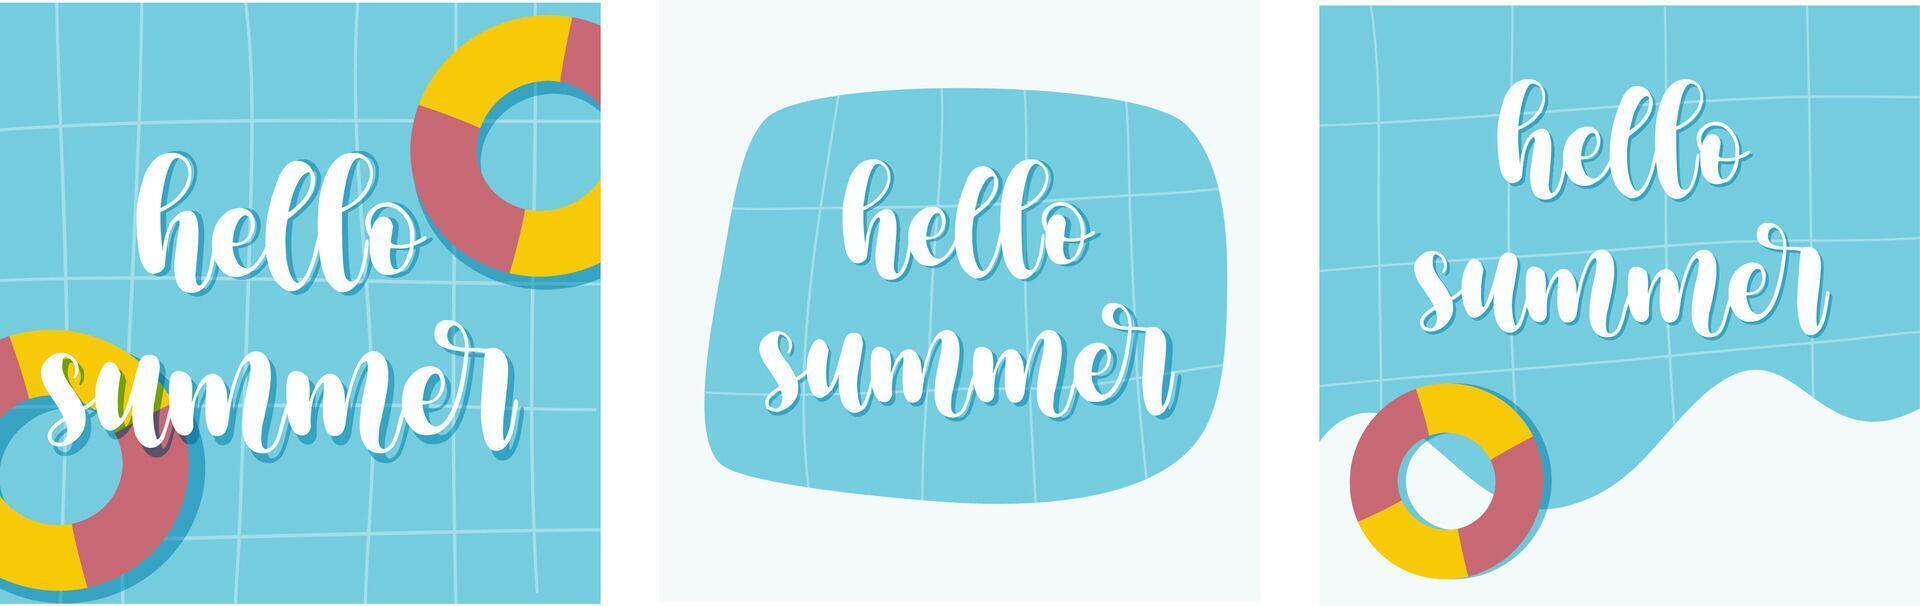 een reeks van illustratie zomer spandoeken. achtergrond met zwembad met zwemmen rubber ringen en tekst Hallo zomer. vector